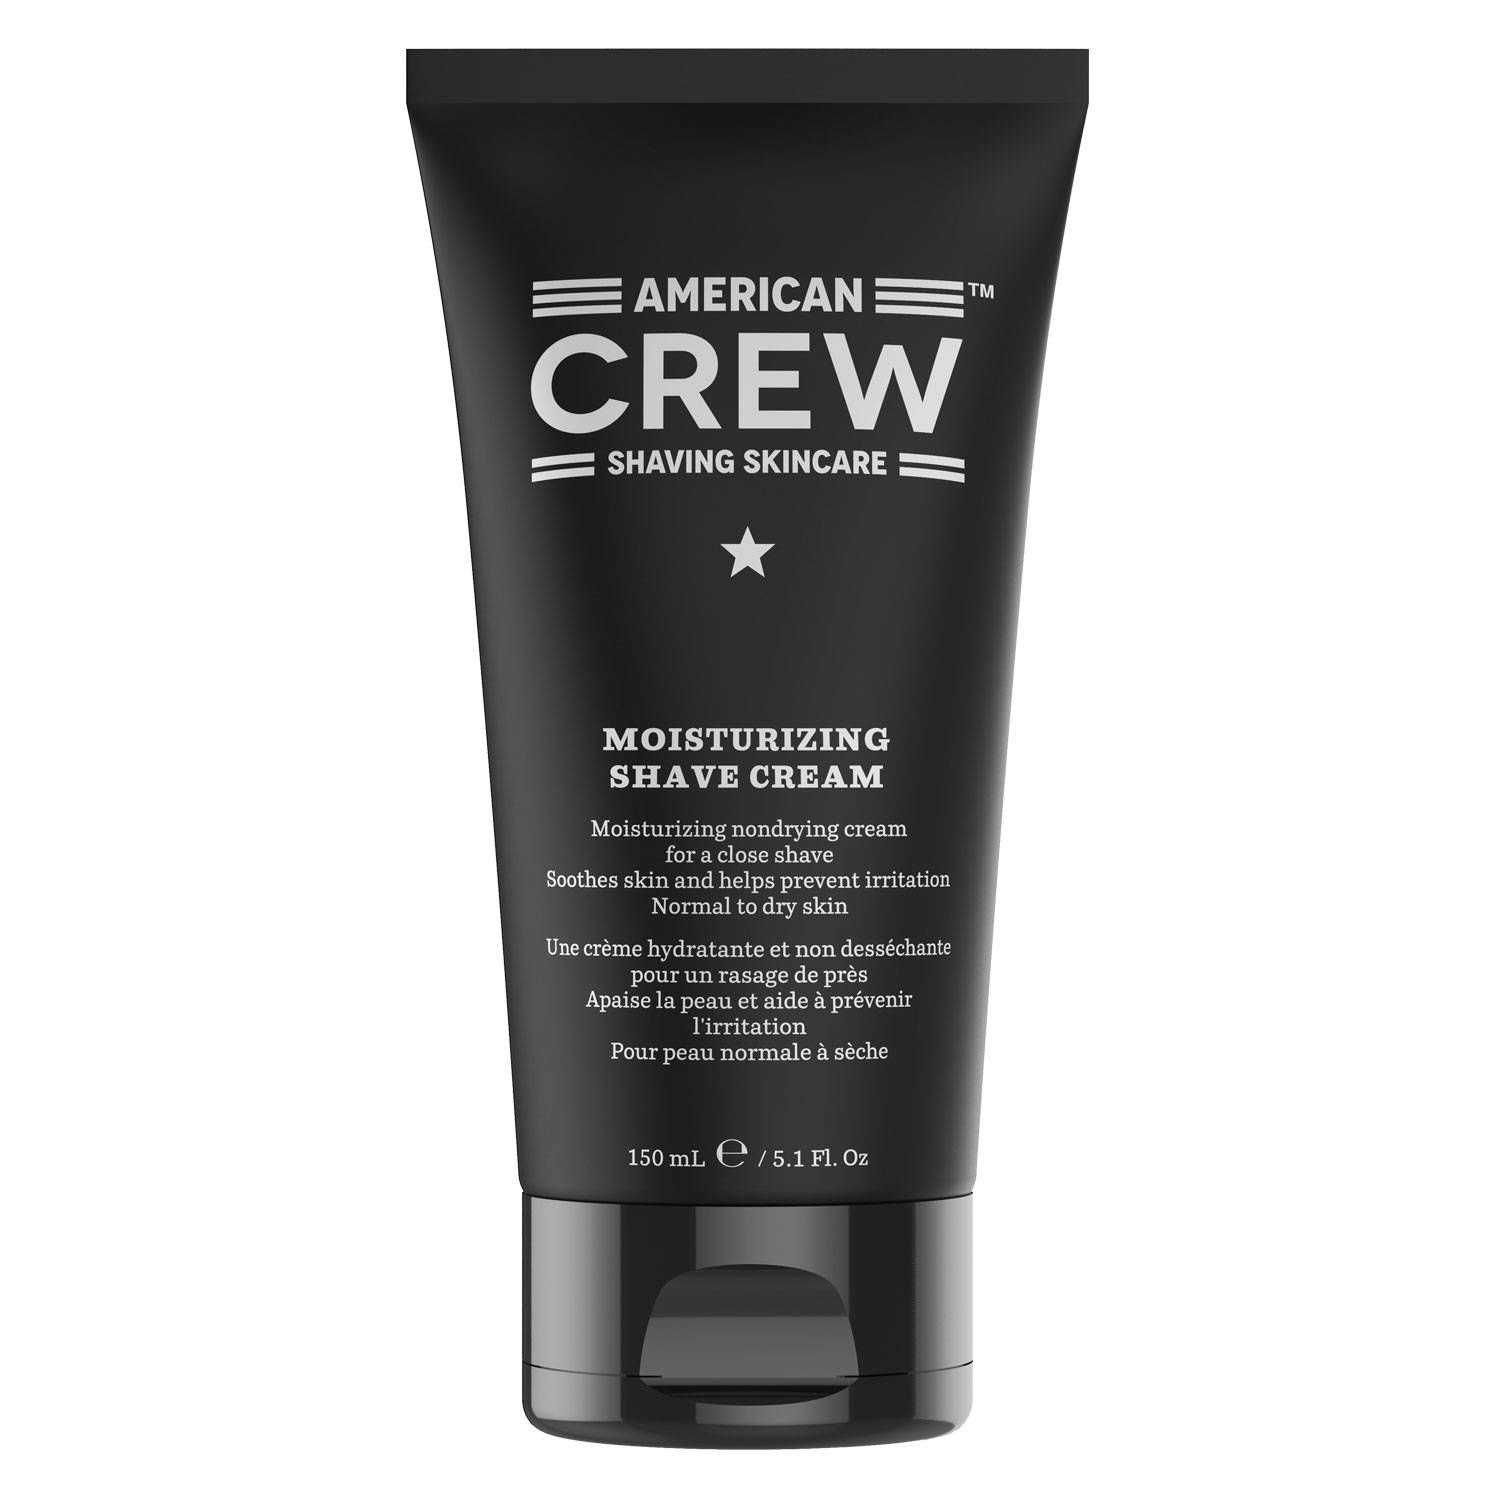 Product image from Shaving Skincare - Moisturizing Shave Cream